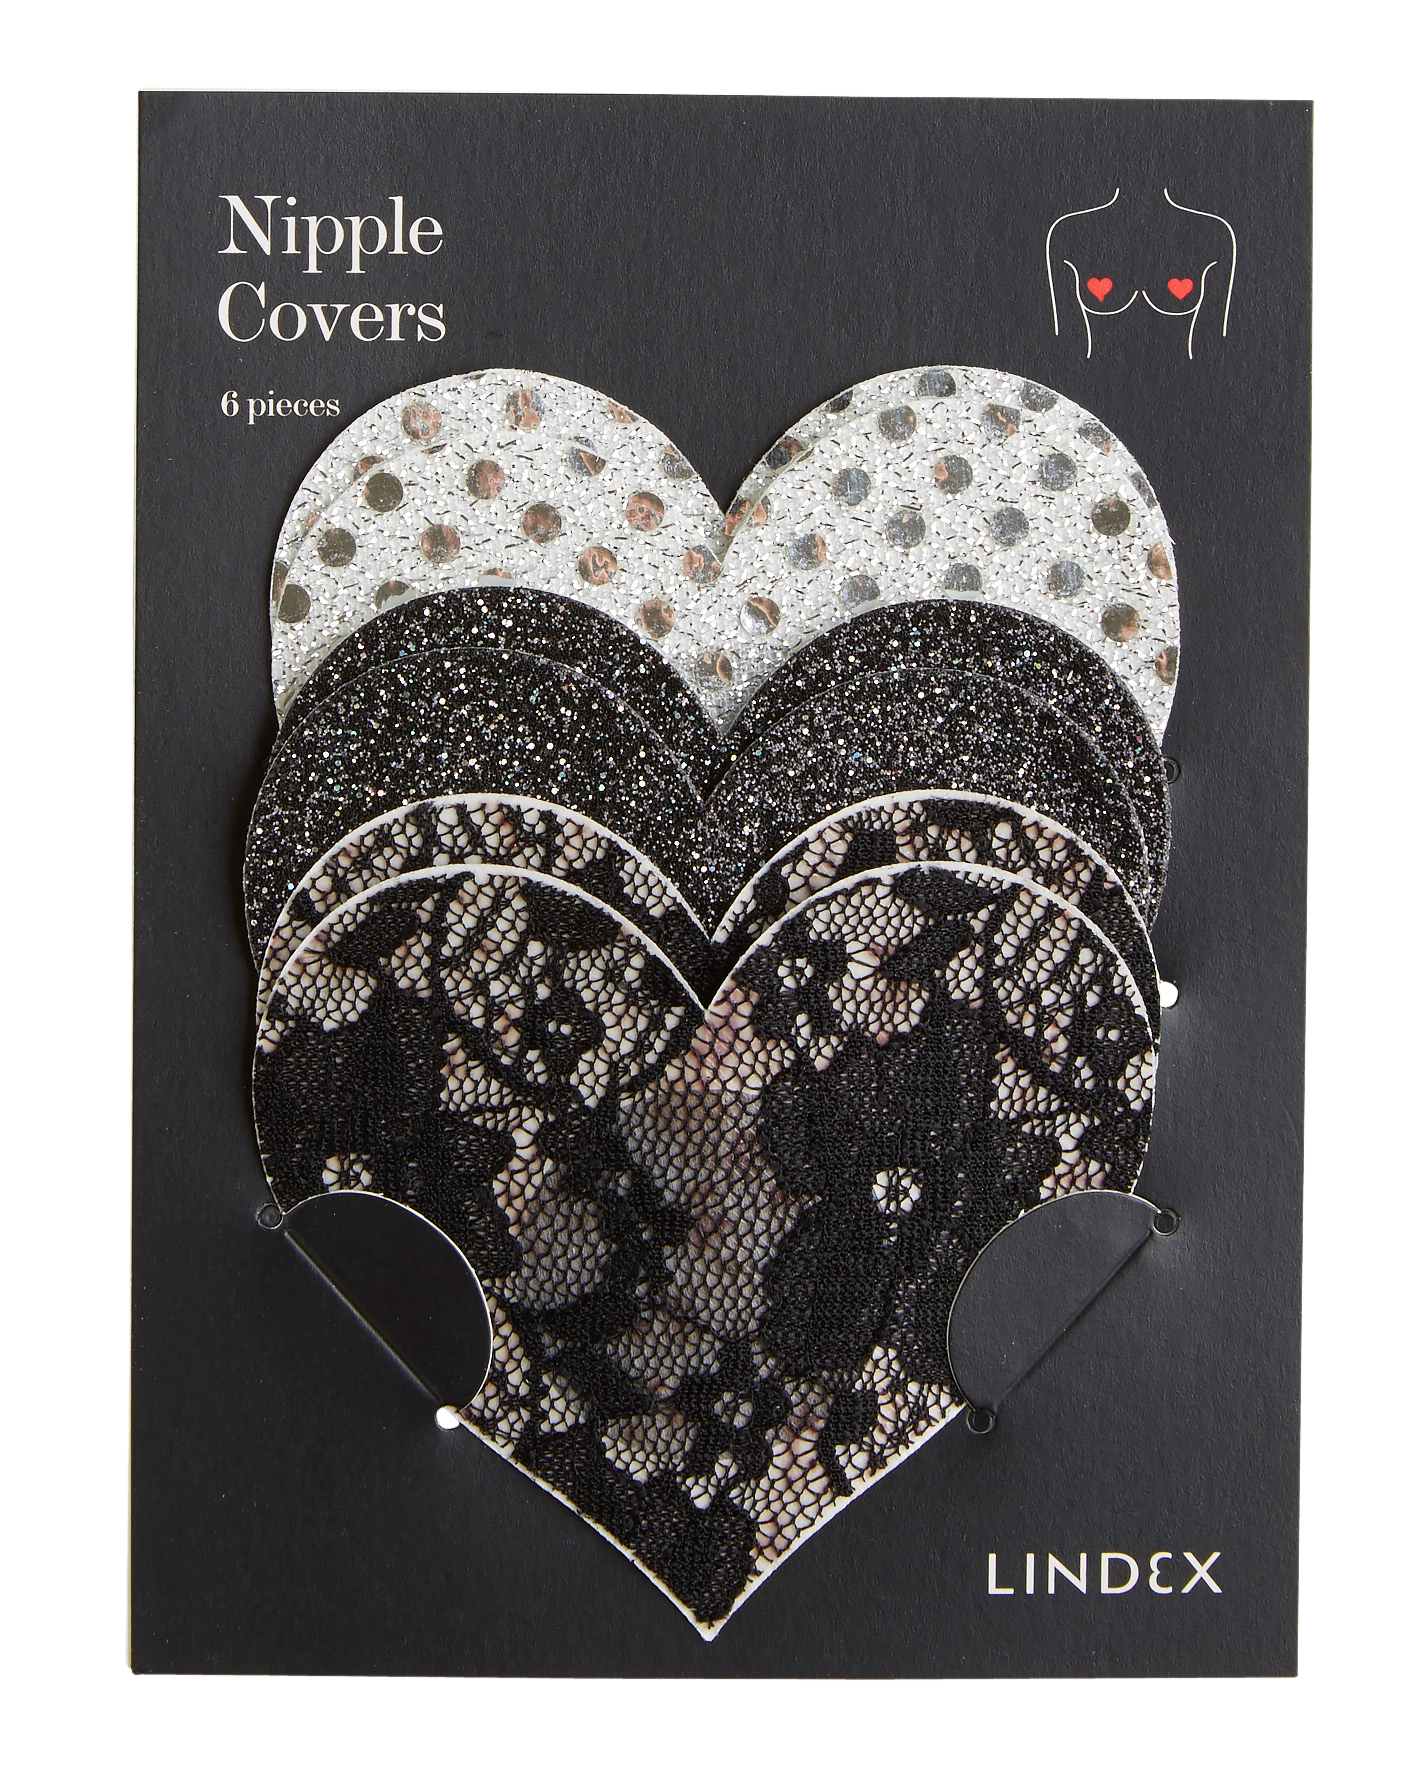 Nipple covers  Lindex Latvia